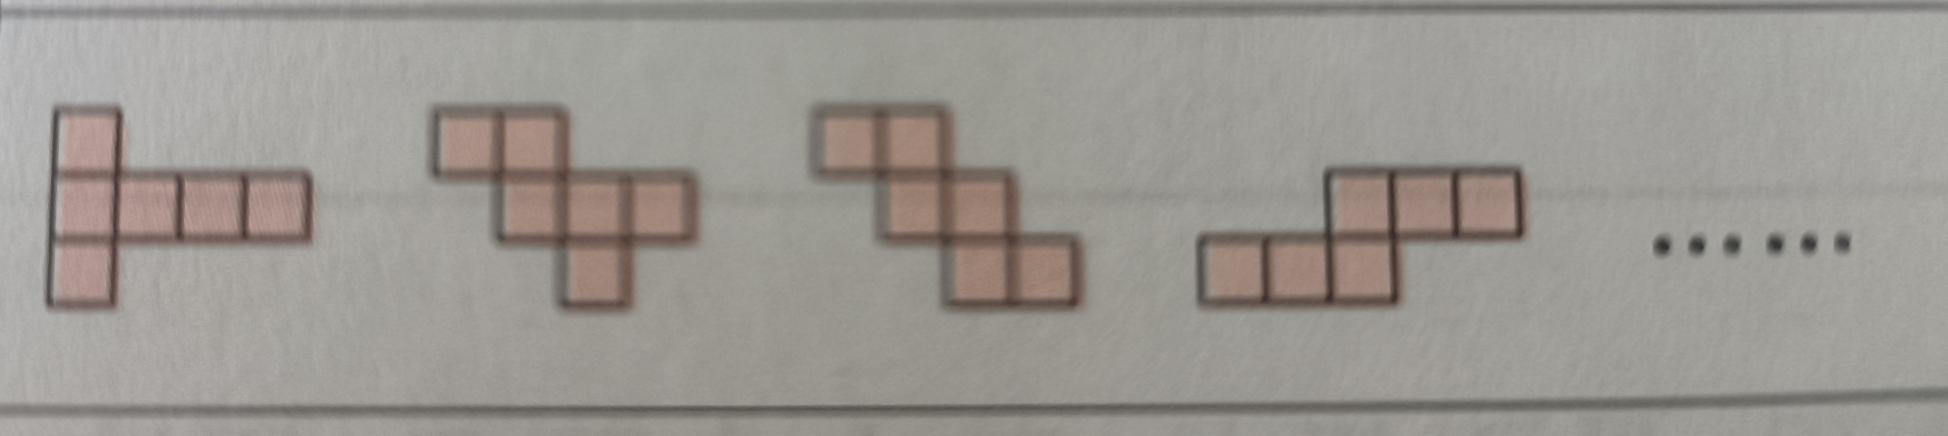 正方体几个面几条棱几个顶点,正方体有几个面几条边几条顶点(2)